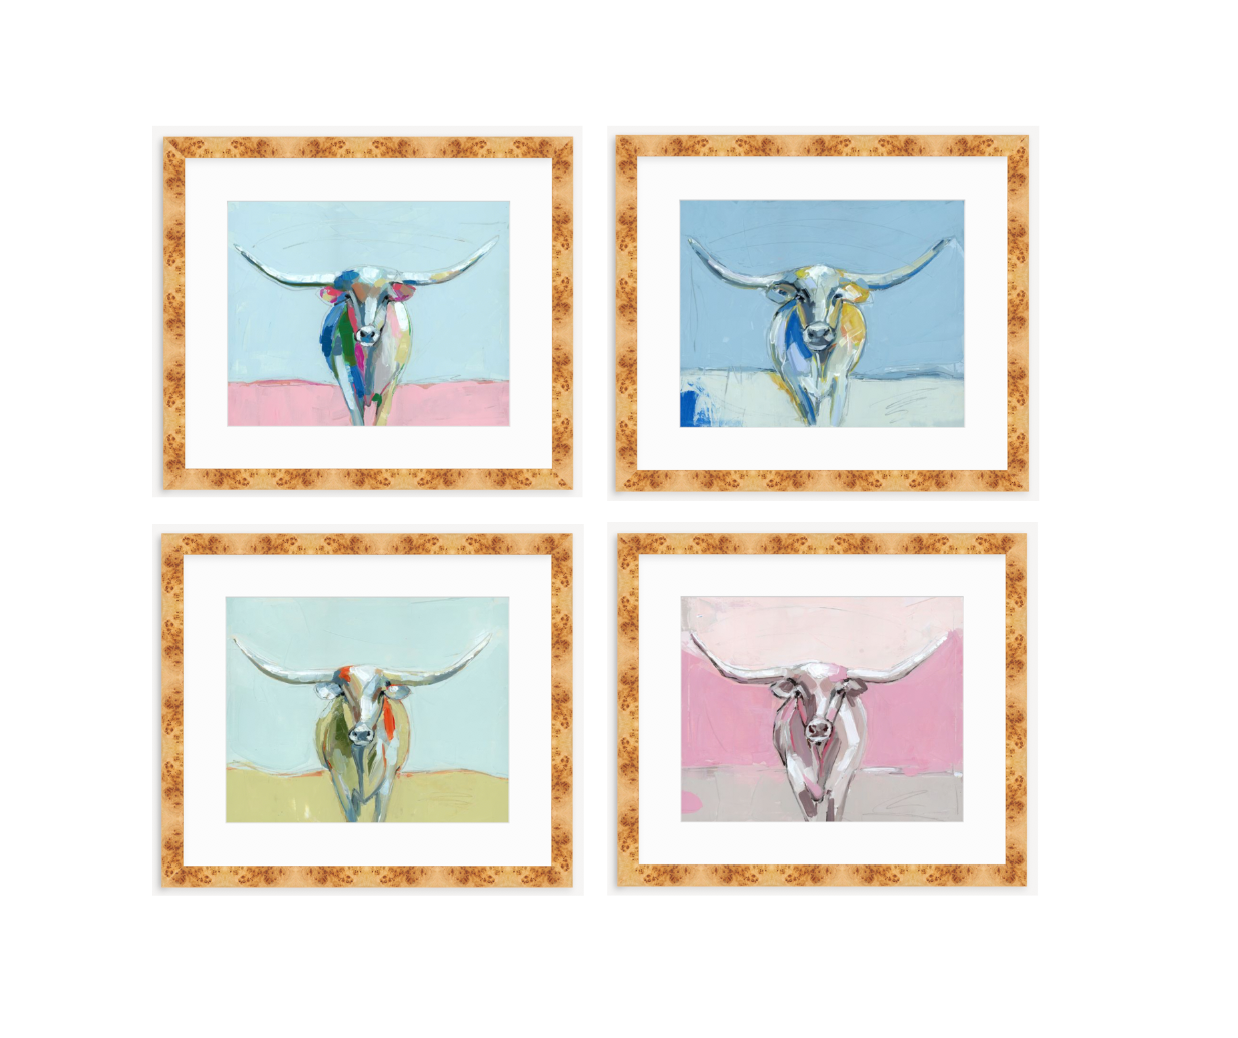 Longhorns (sets of 2 or 4) on paper